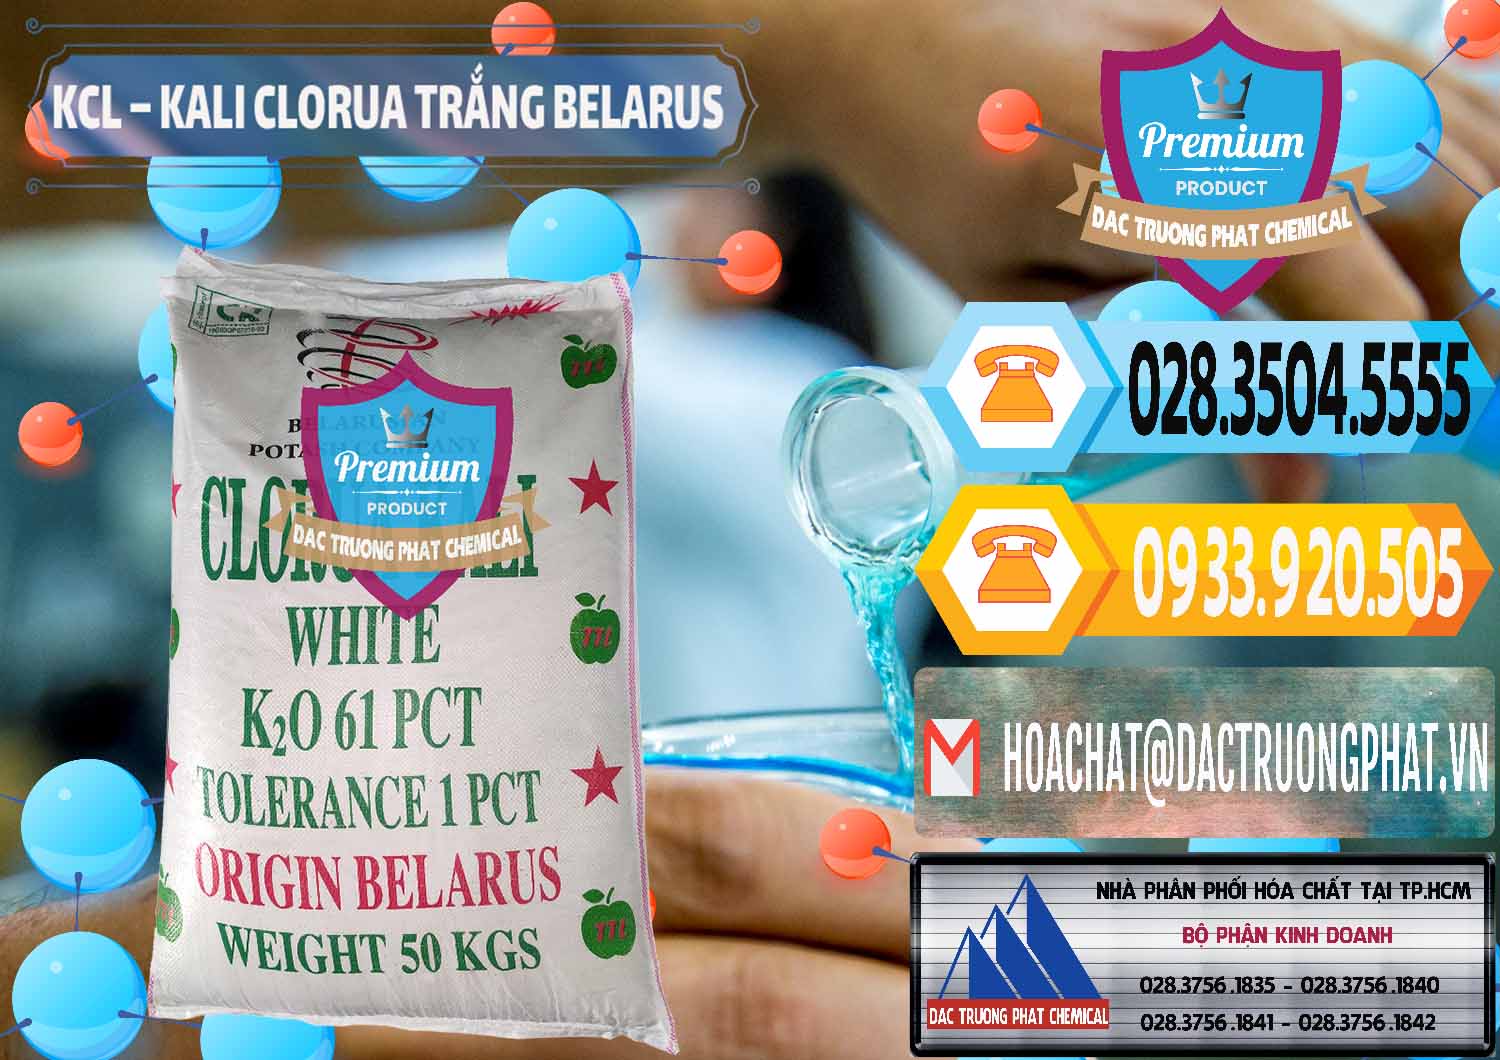 Nơi chuyên cung ứng ( bán ) KCL – Kali Clorua Trắng Belarus - 0085 - Cty kinh doanh _ cung cấp hóa chất tại TP.HCM - hoachattayrua.net